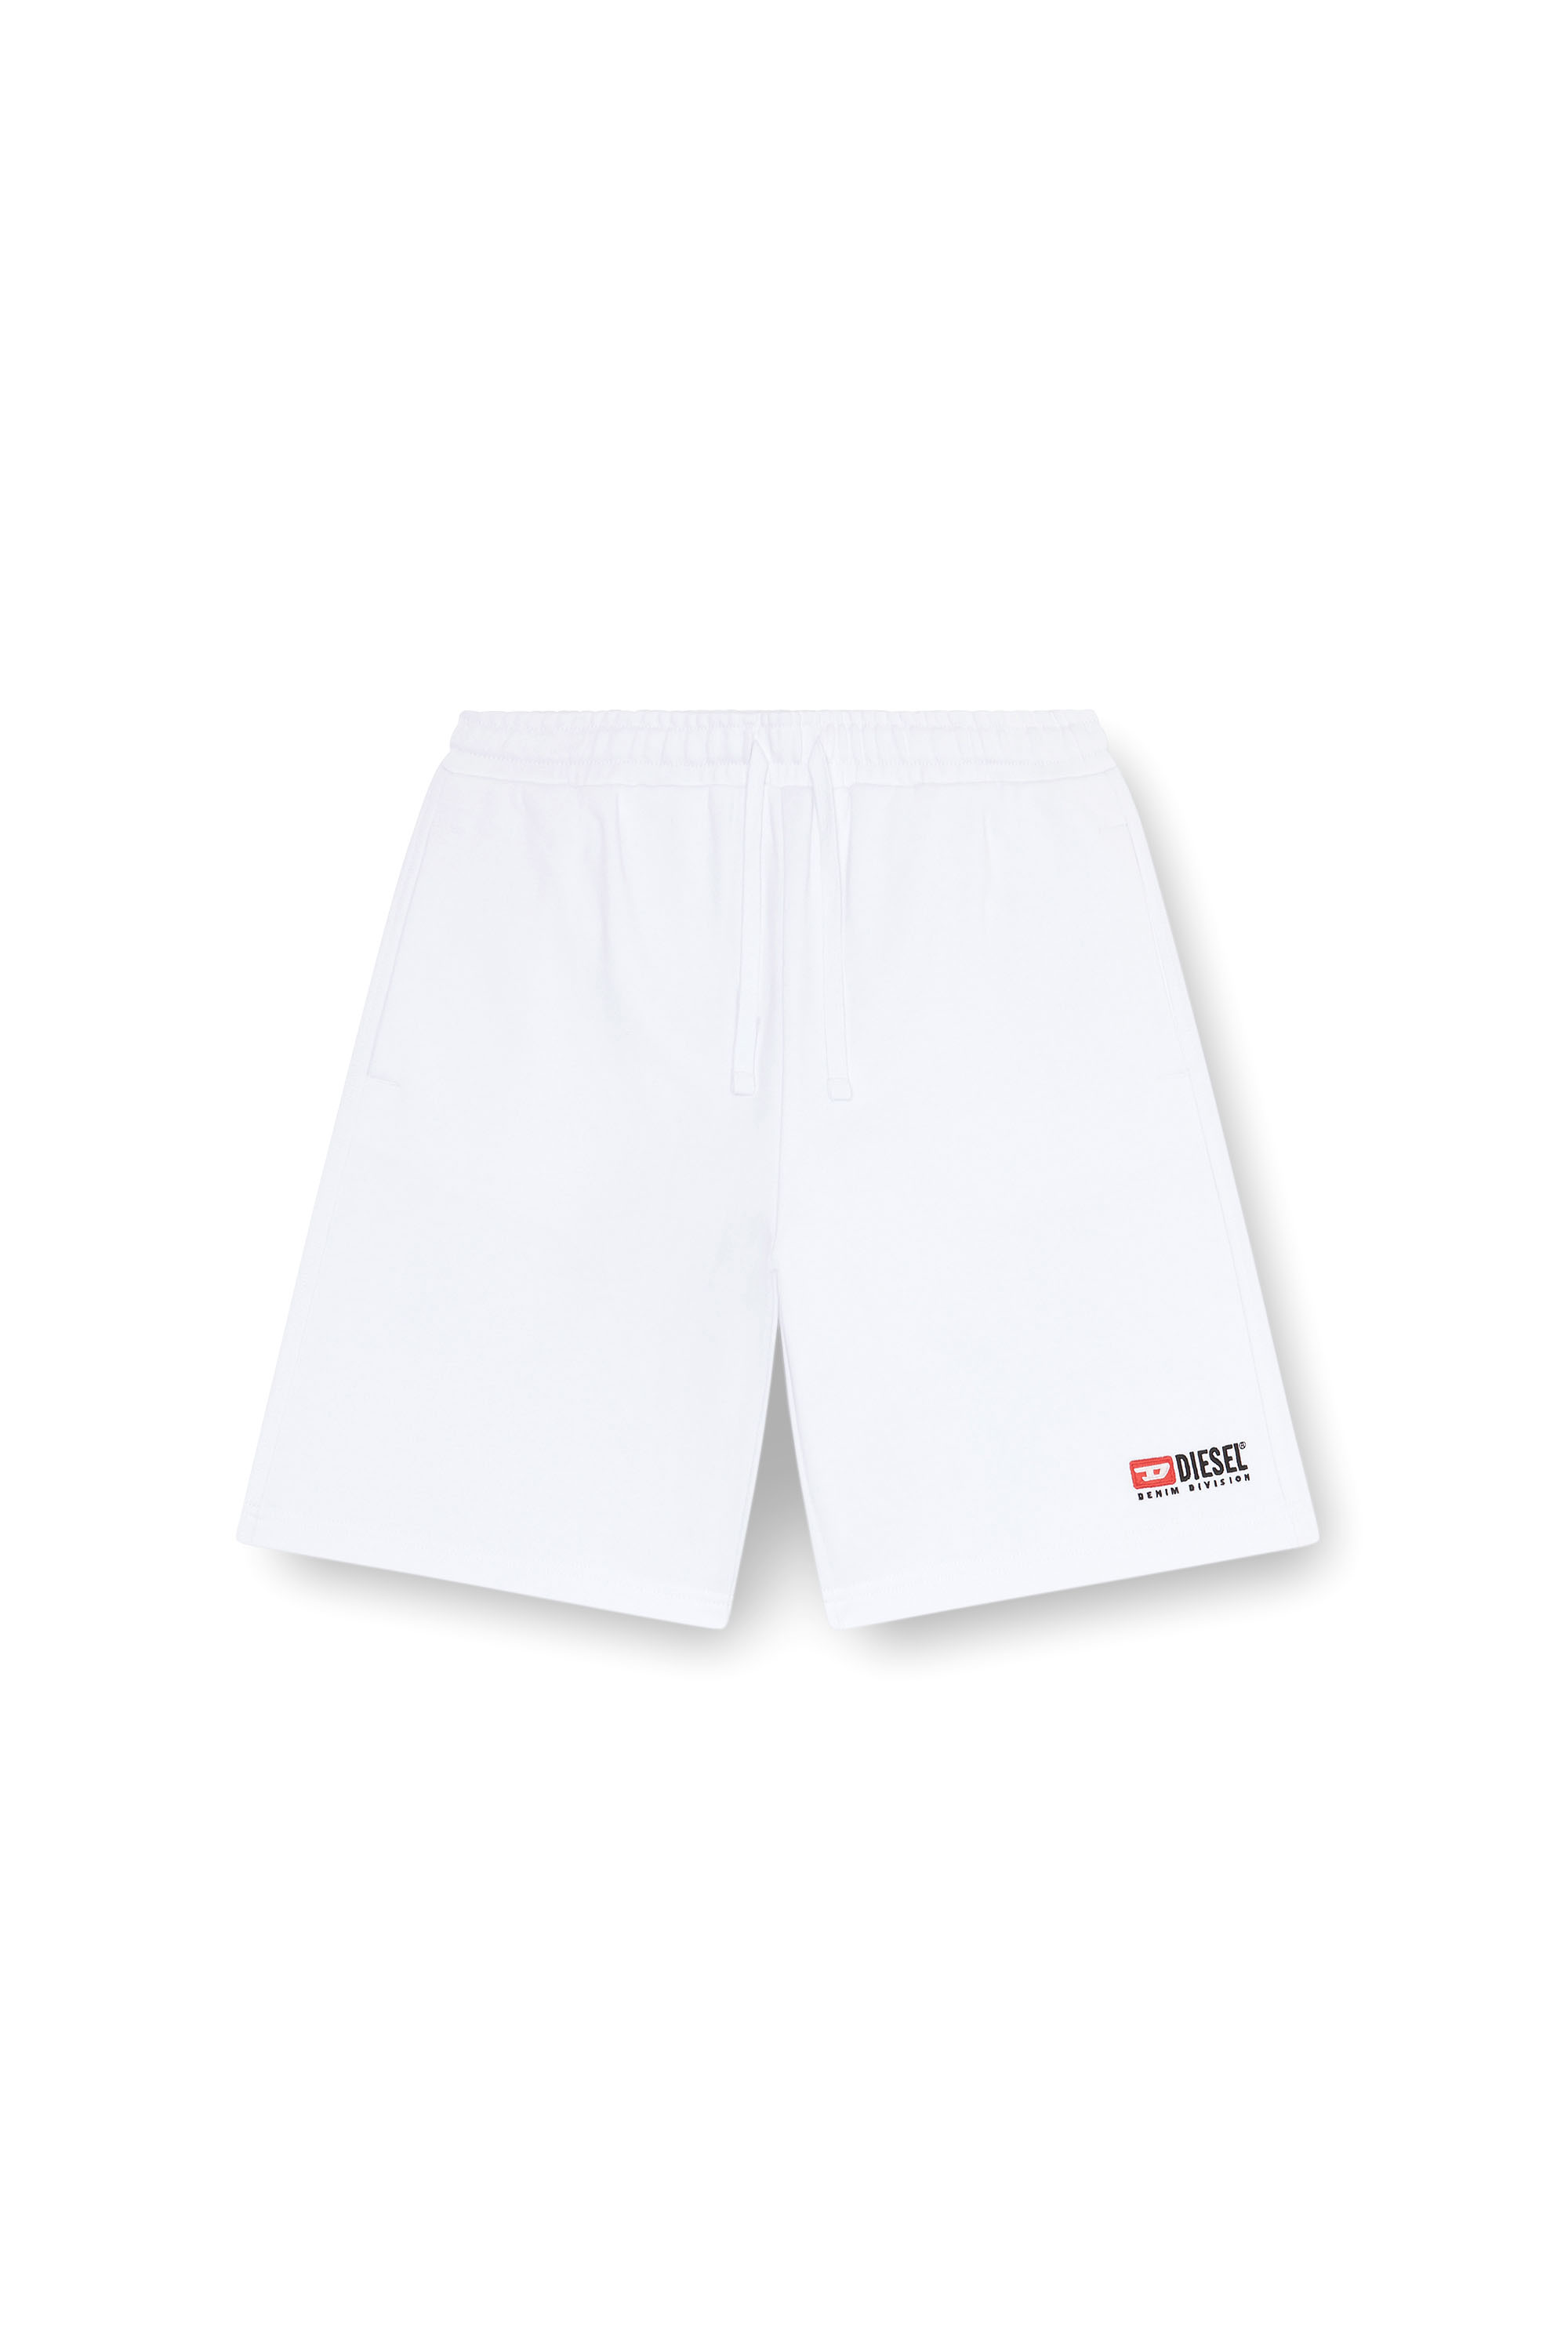 Diesel - P-CROWN-DIV, Hombre Pantalones cortos deportivos con logotipo bordado in Blanco - Image 3